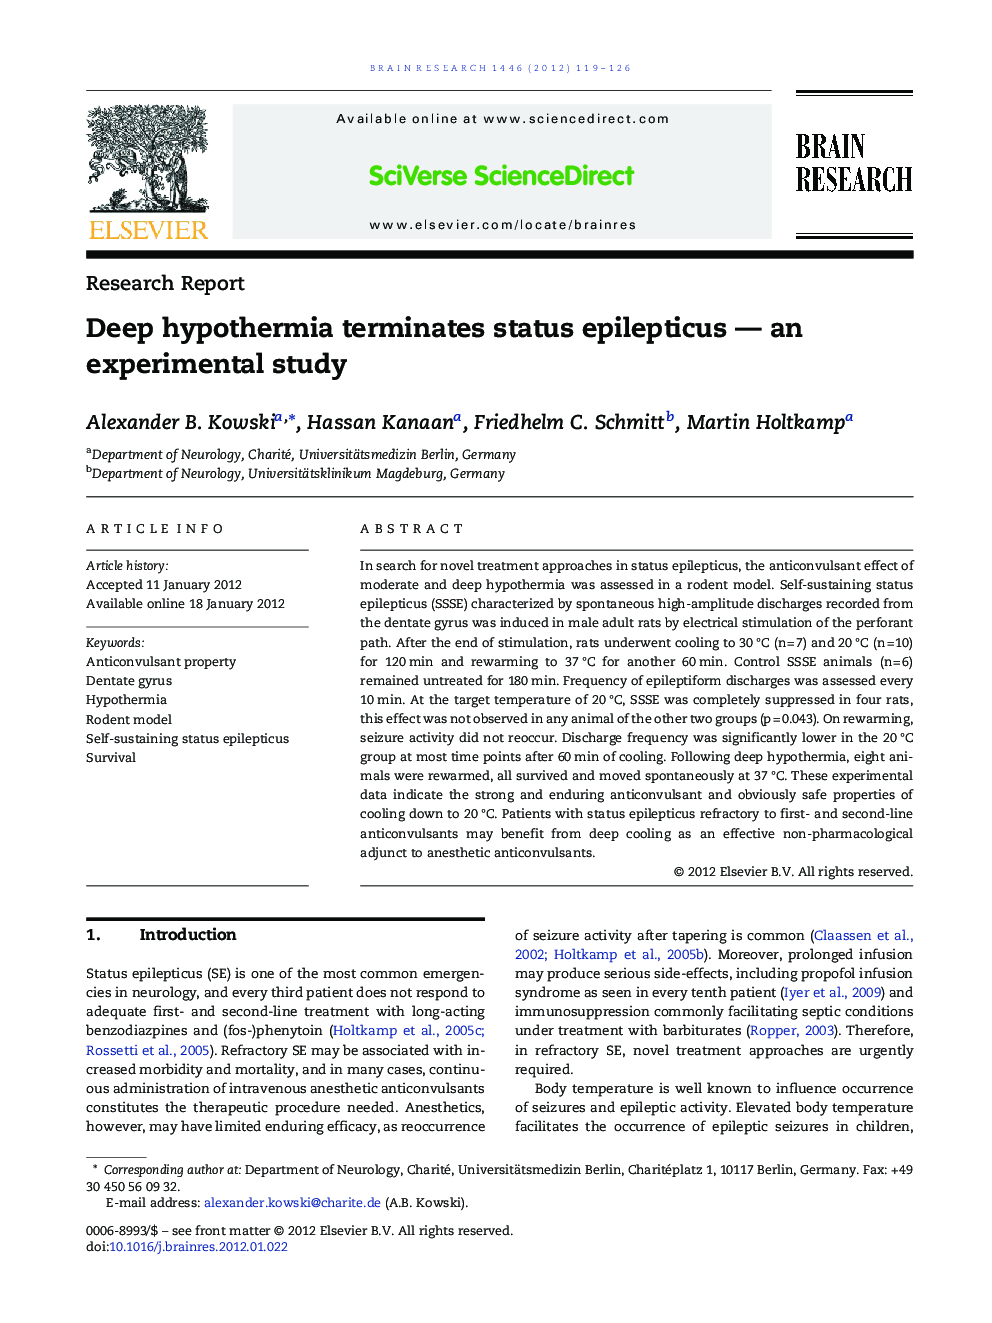 Deep hypothermia terminates status epilepticus — an experimental study